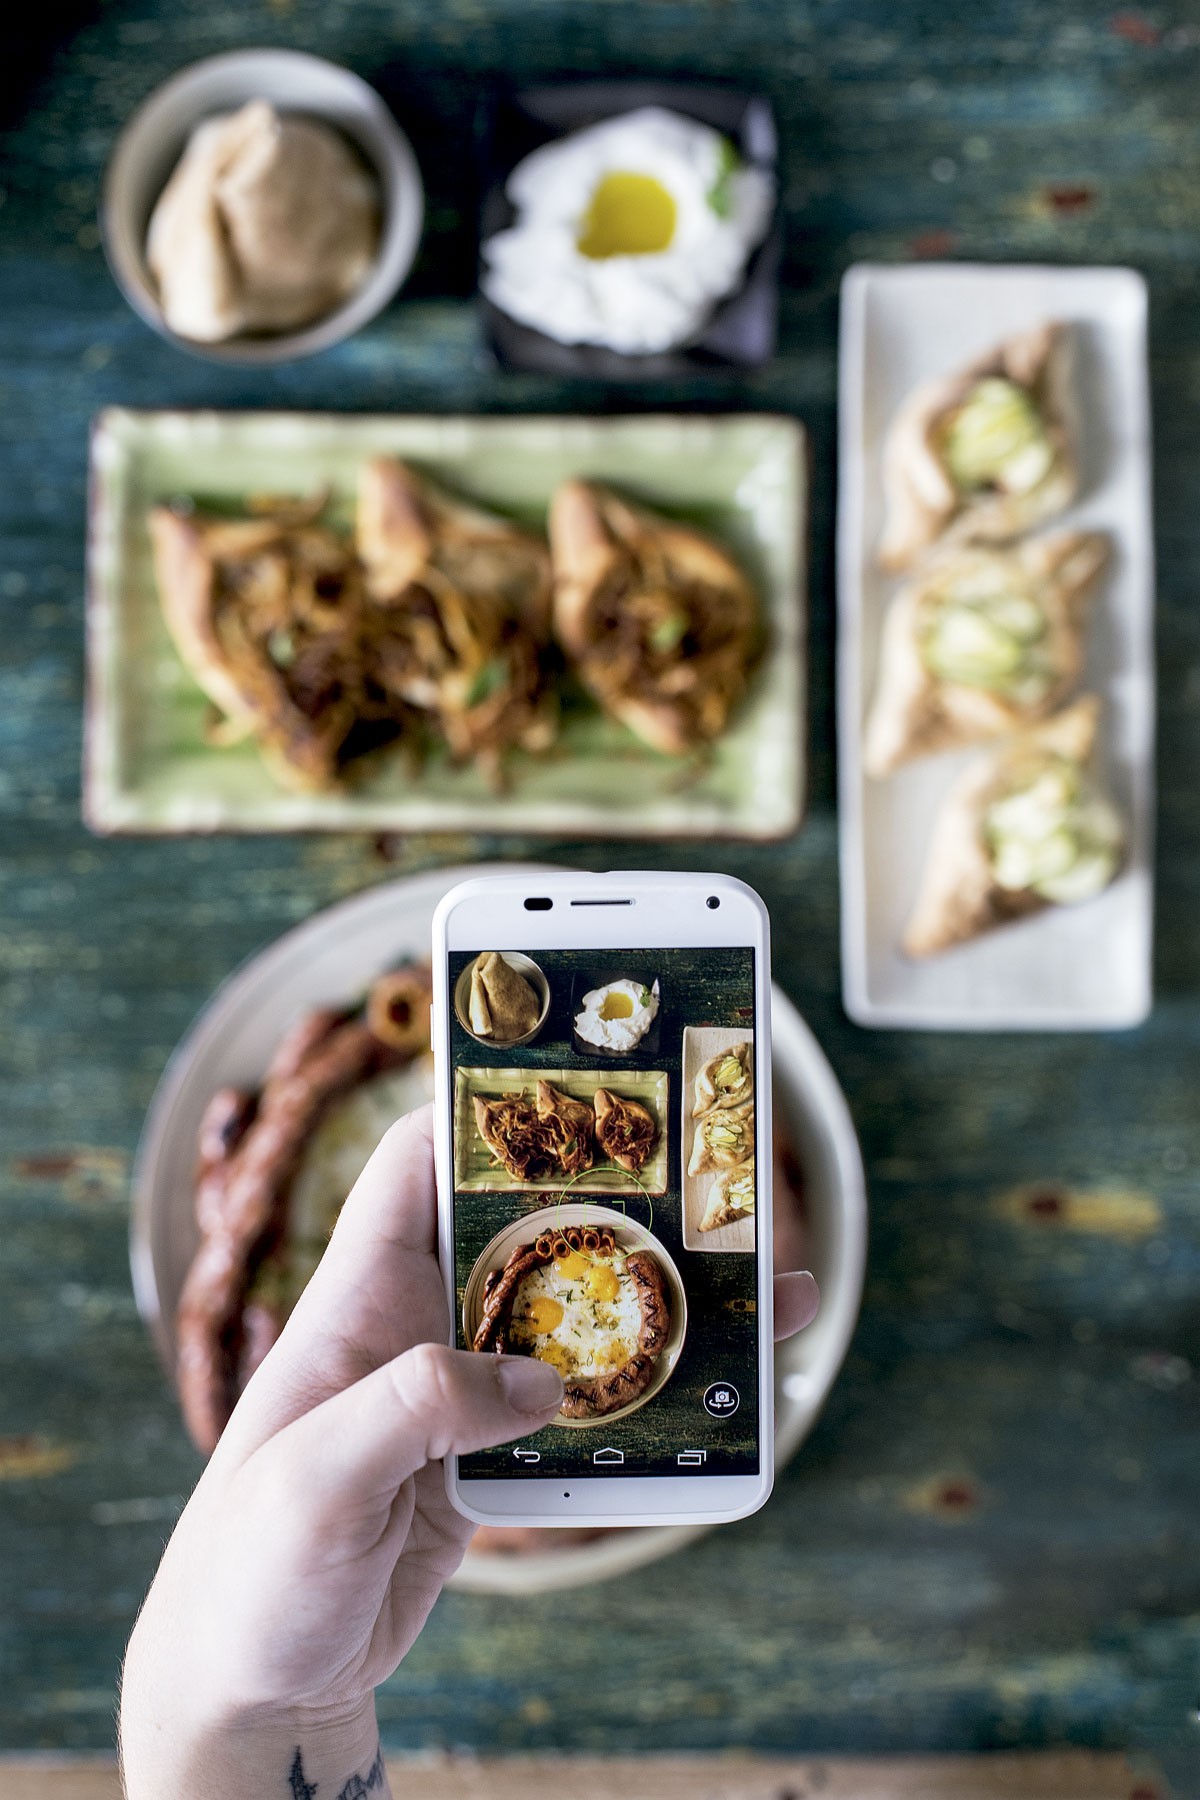 Comendo com os olhos: Linguiças e esfihas fizeram o restaurante Sainte Marie aumentar a clientela após fotos delas virarem hit no Instagram (Foto: Julia Rodrigues/Editora Globo)